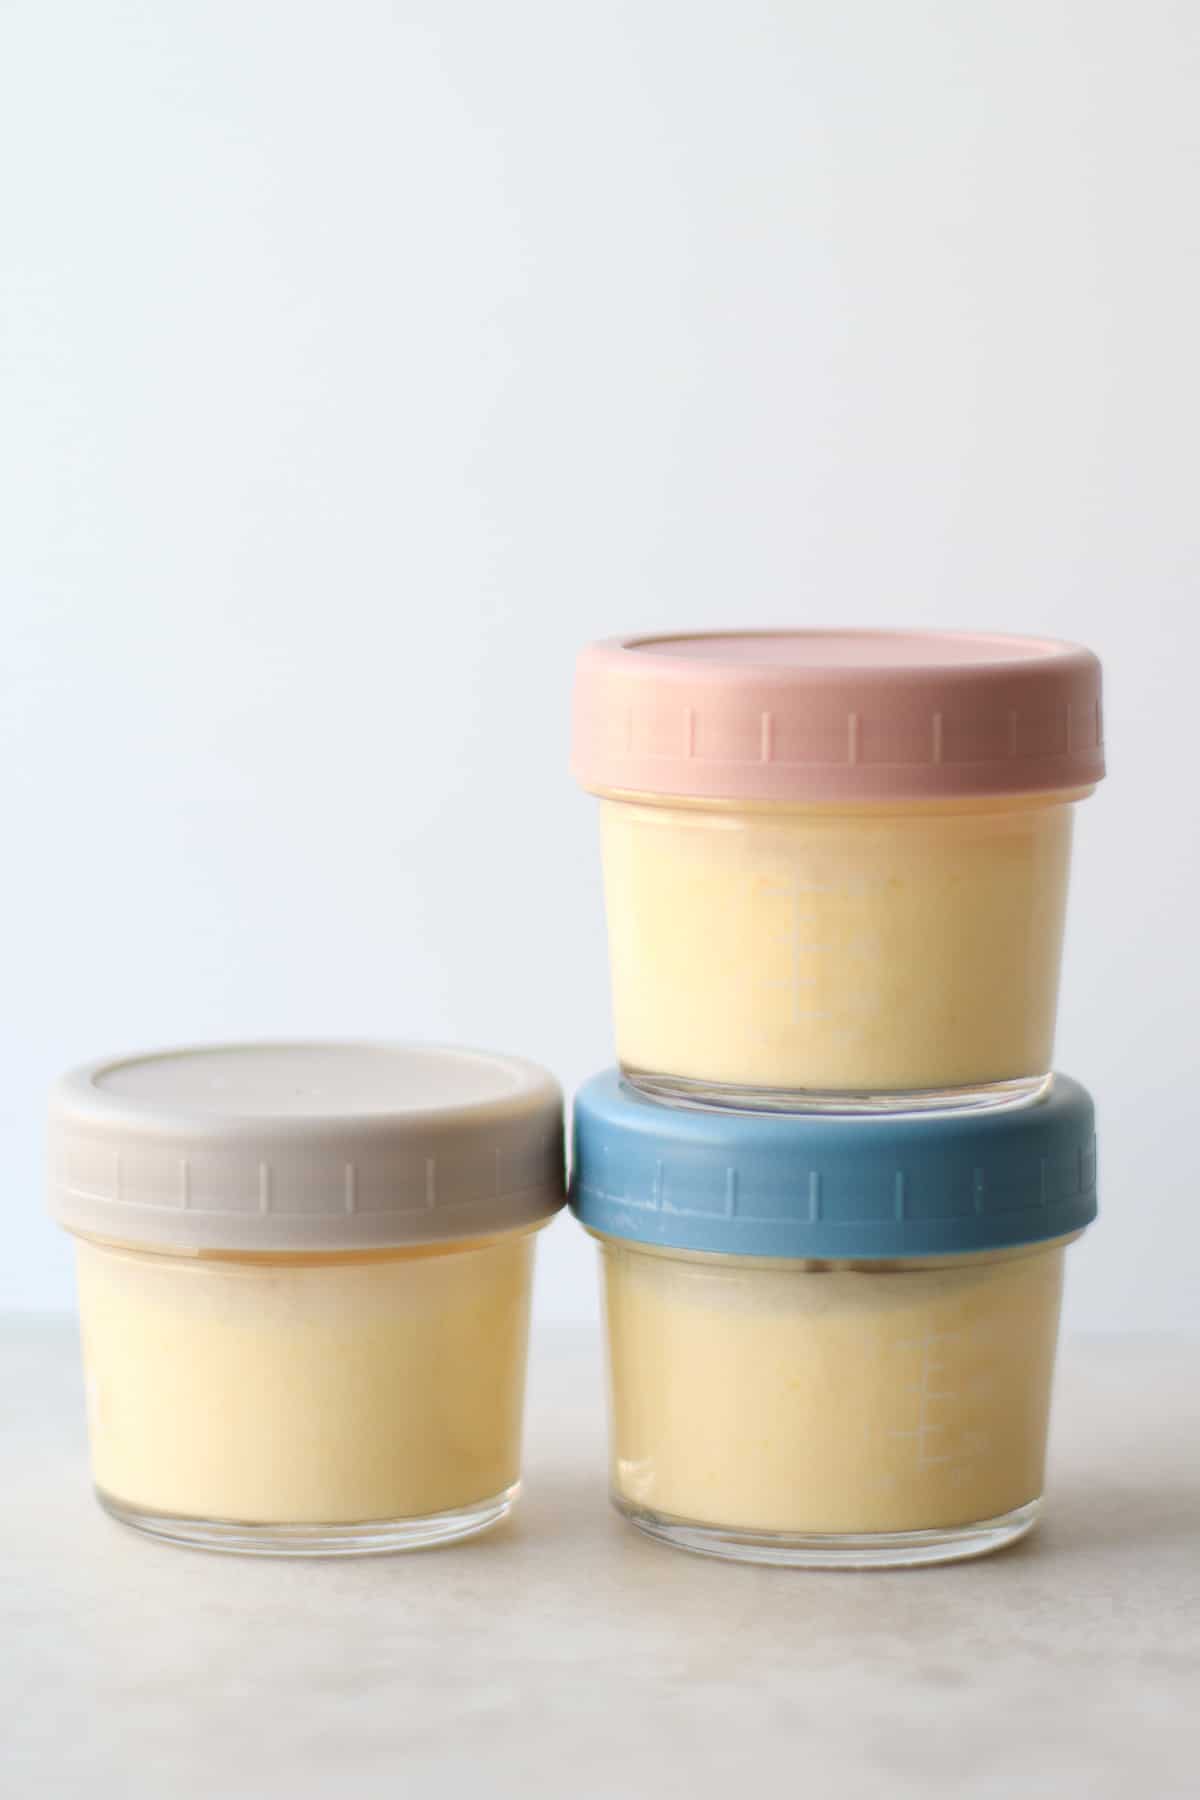 Mango yogurt stored in three glass containers.